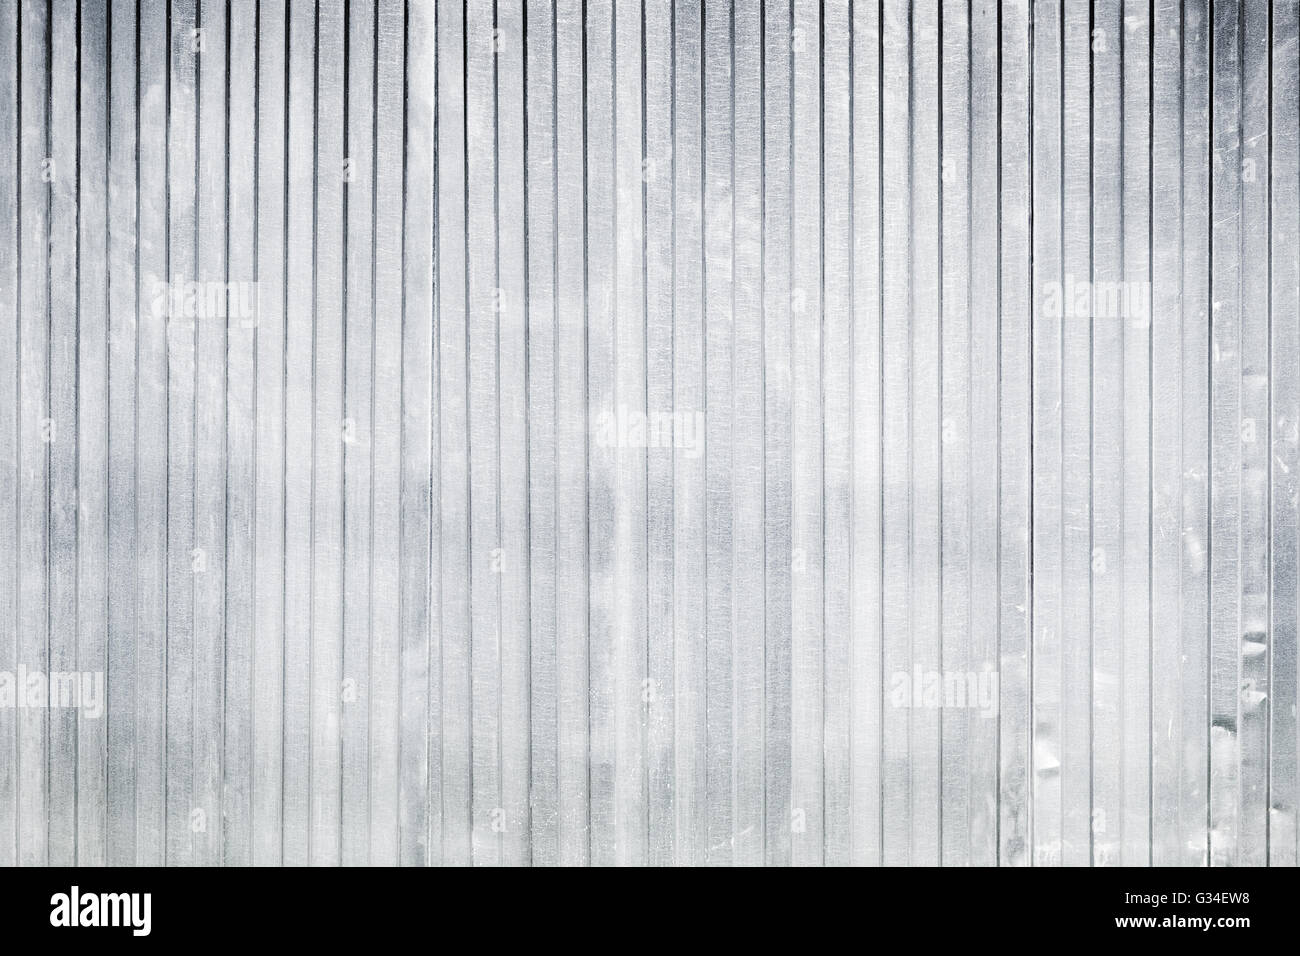 Nouvelle clôture en métal ondulé, texture photo wall background industriel Banque D'Images